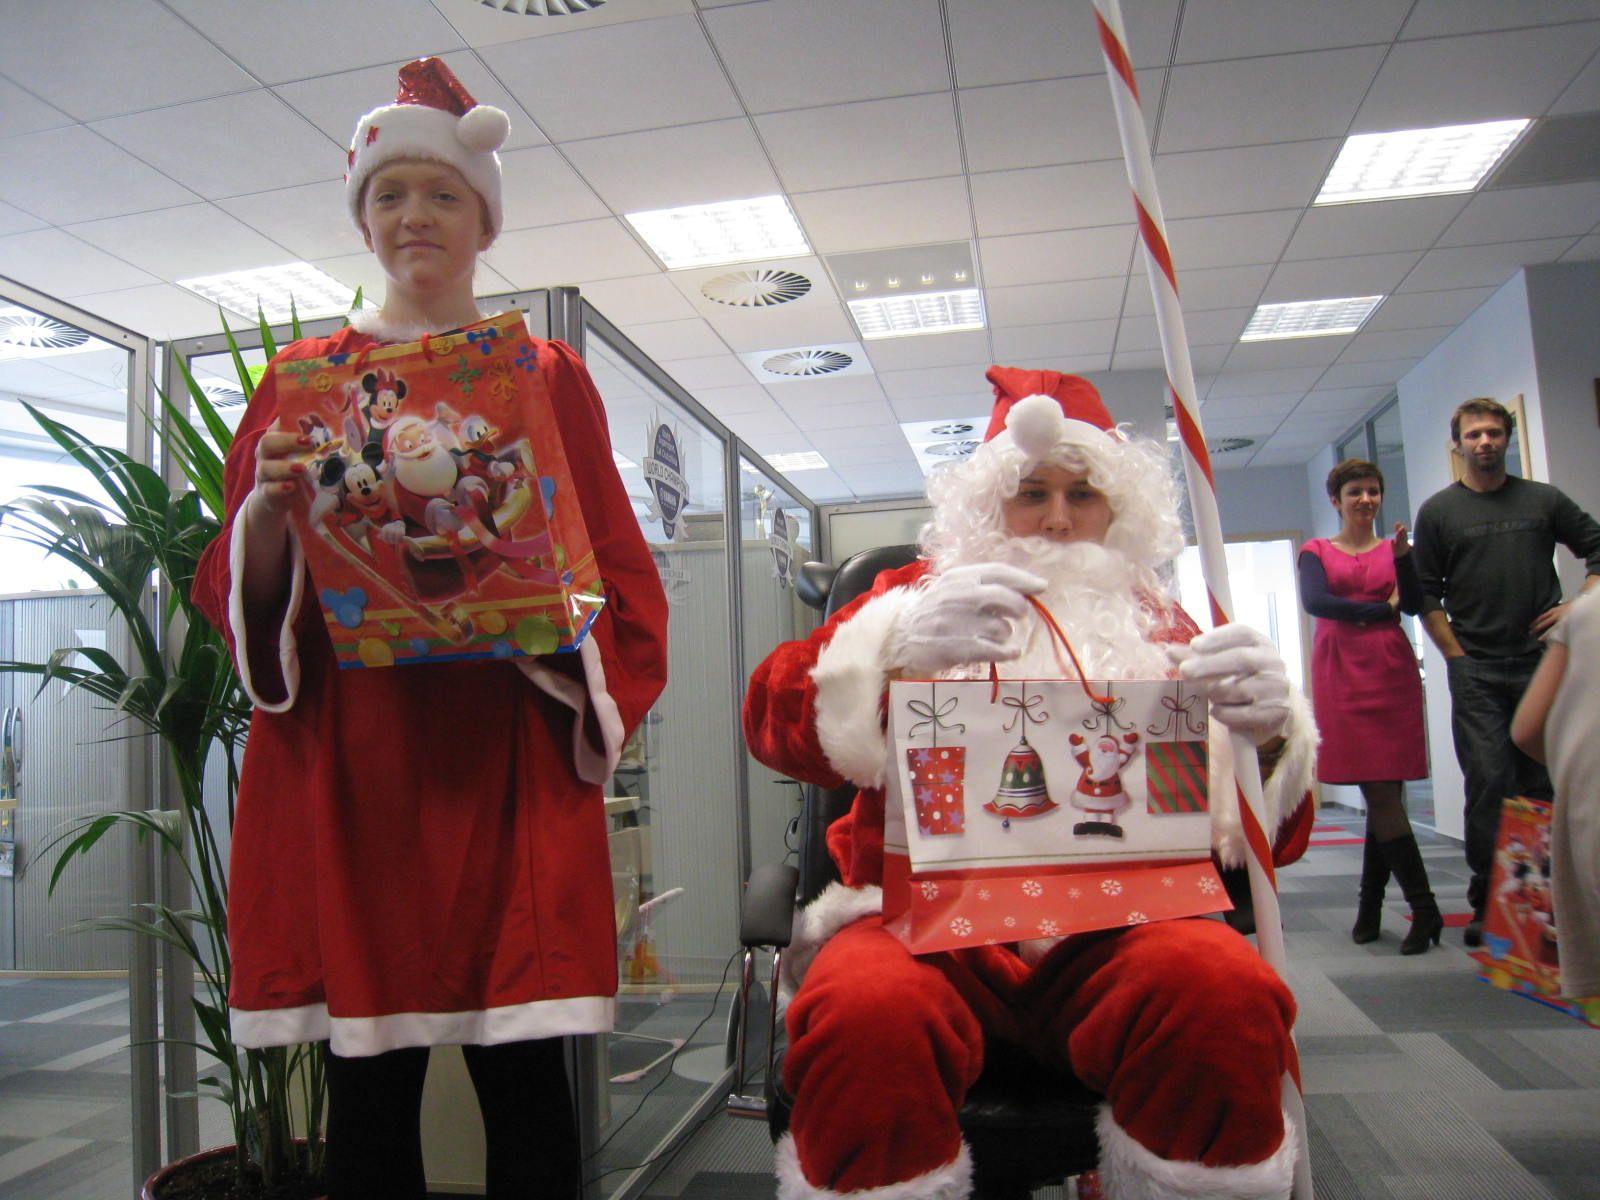 Święty Mikołaj i śnieżynka wręczają prezenty www.klaunpolska